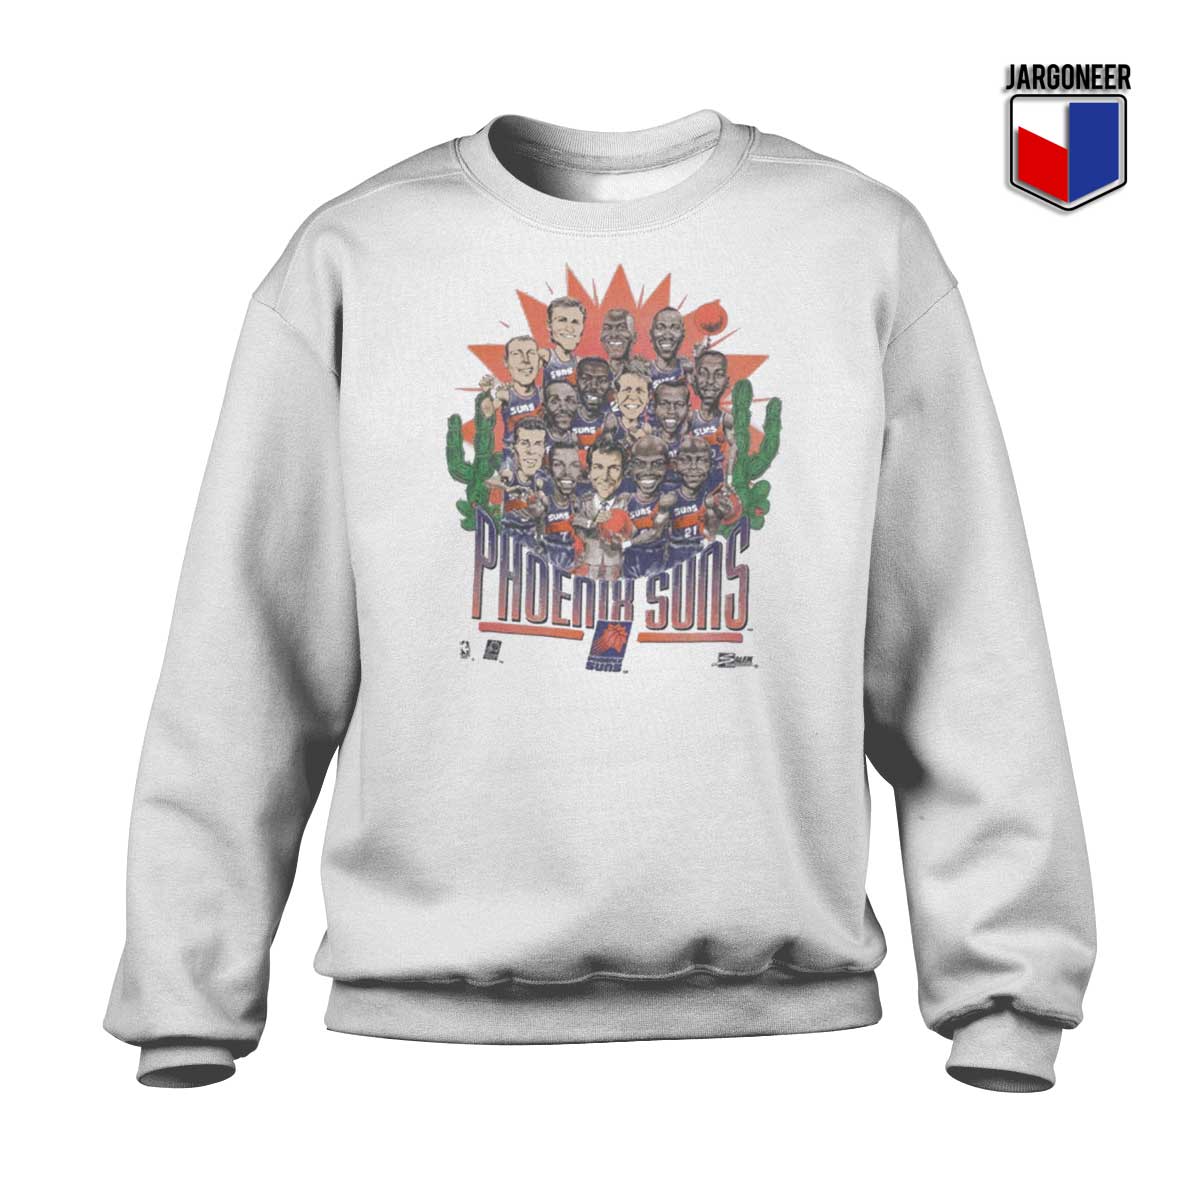 Phoenix Suns Vintage Sweatshirt - Shop Unique Graphic Cool Shirt Designs